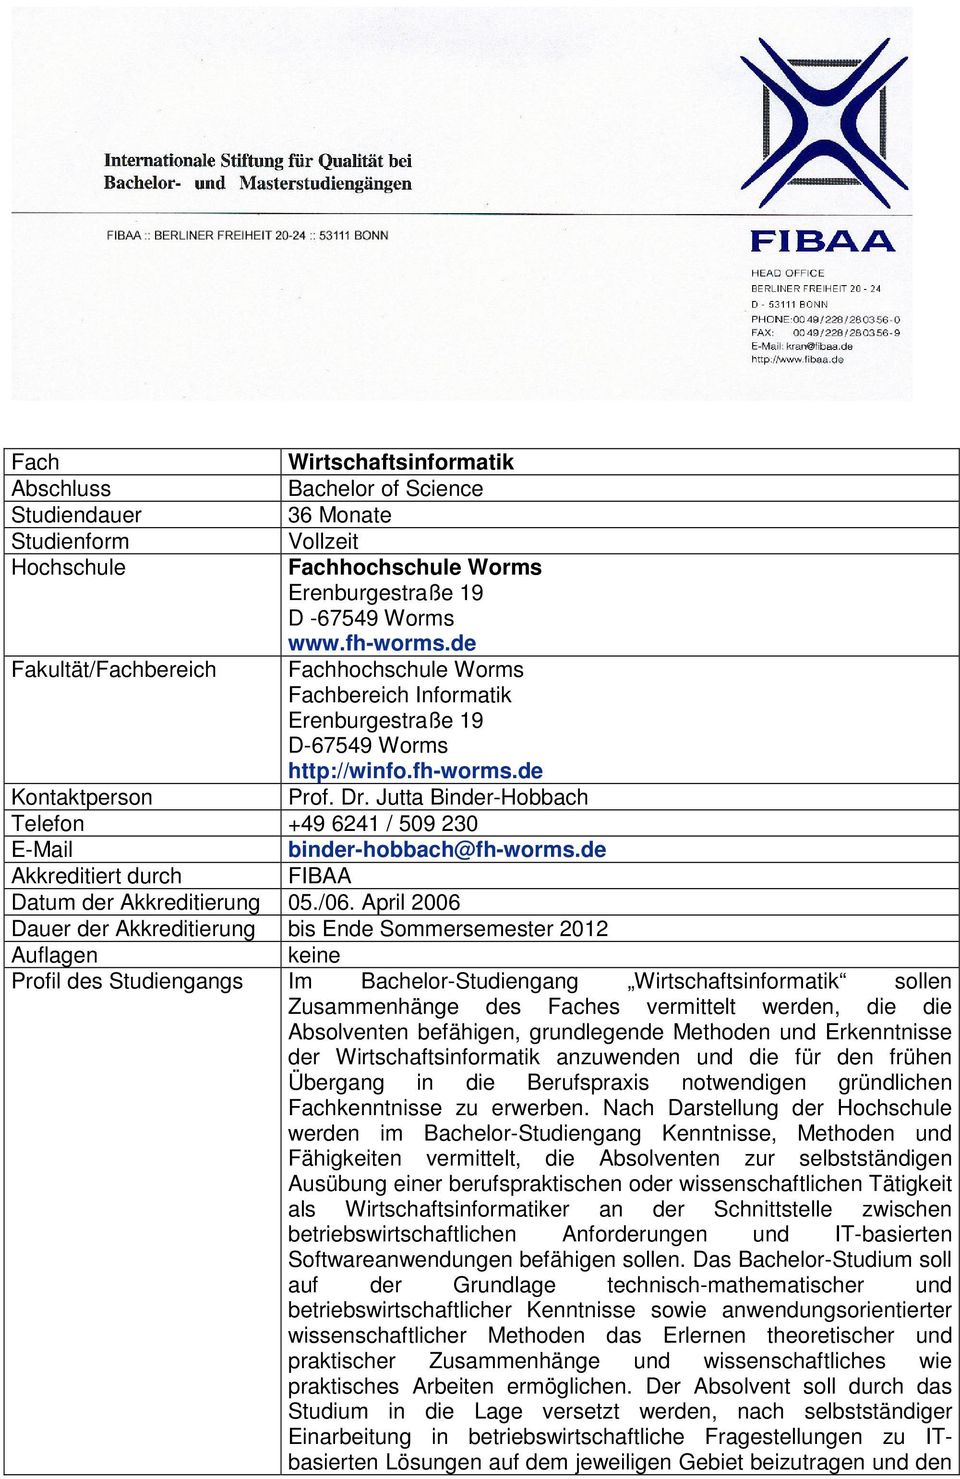 Jutta Binder-Hobbach Telefon +49 6241 / 509 230 E-Mail binder-hobbach@fh-worms.de Akkreditiert durch FIBAA Datum der Akkreditierung 05./06.